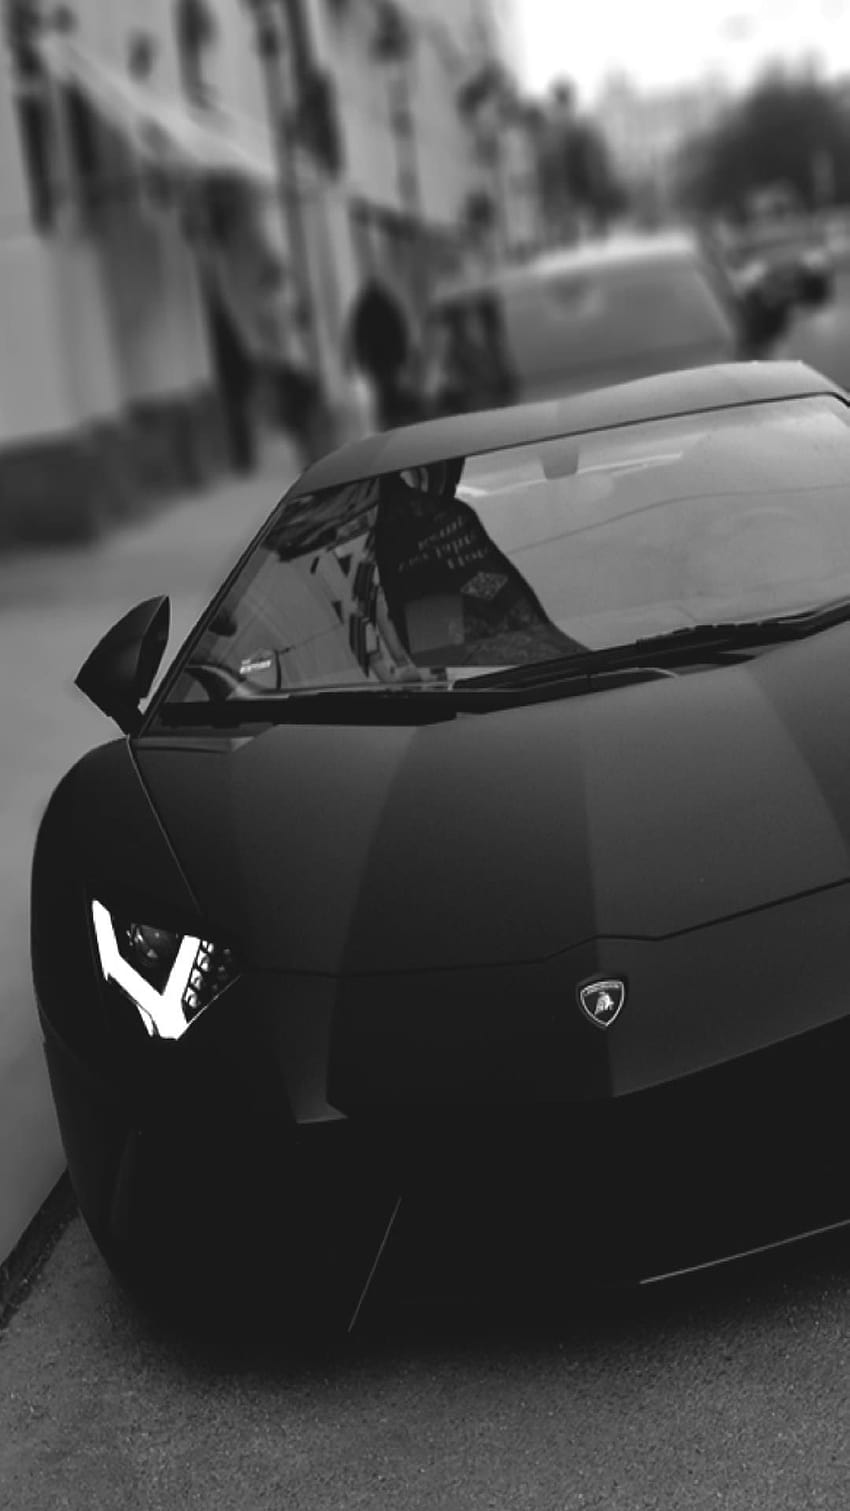 Black Lamborghini, mobil lamborghini mobile wallpaper ponsel HD